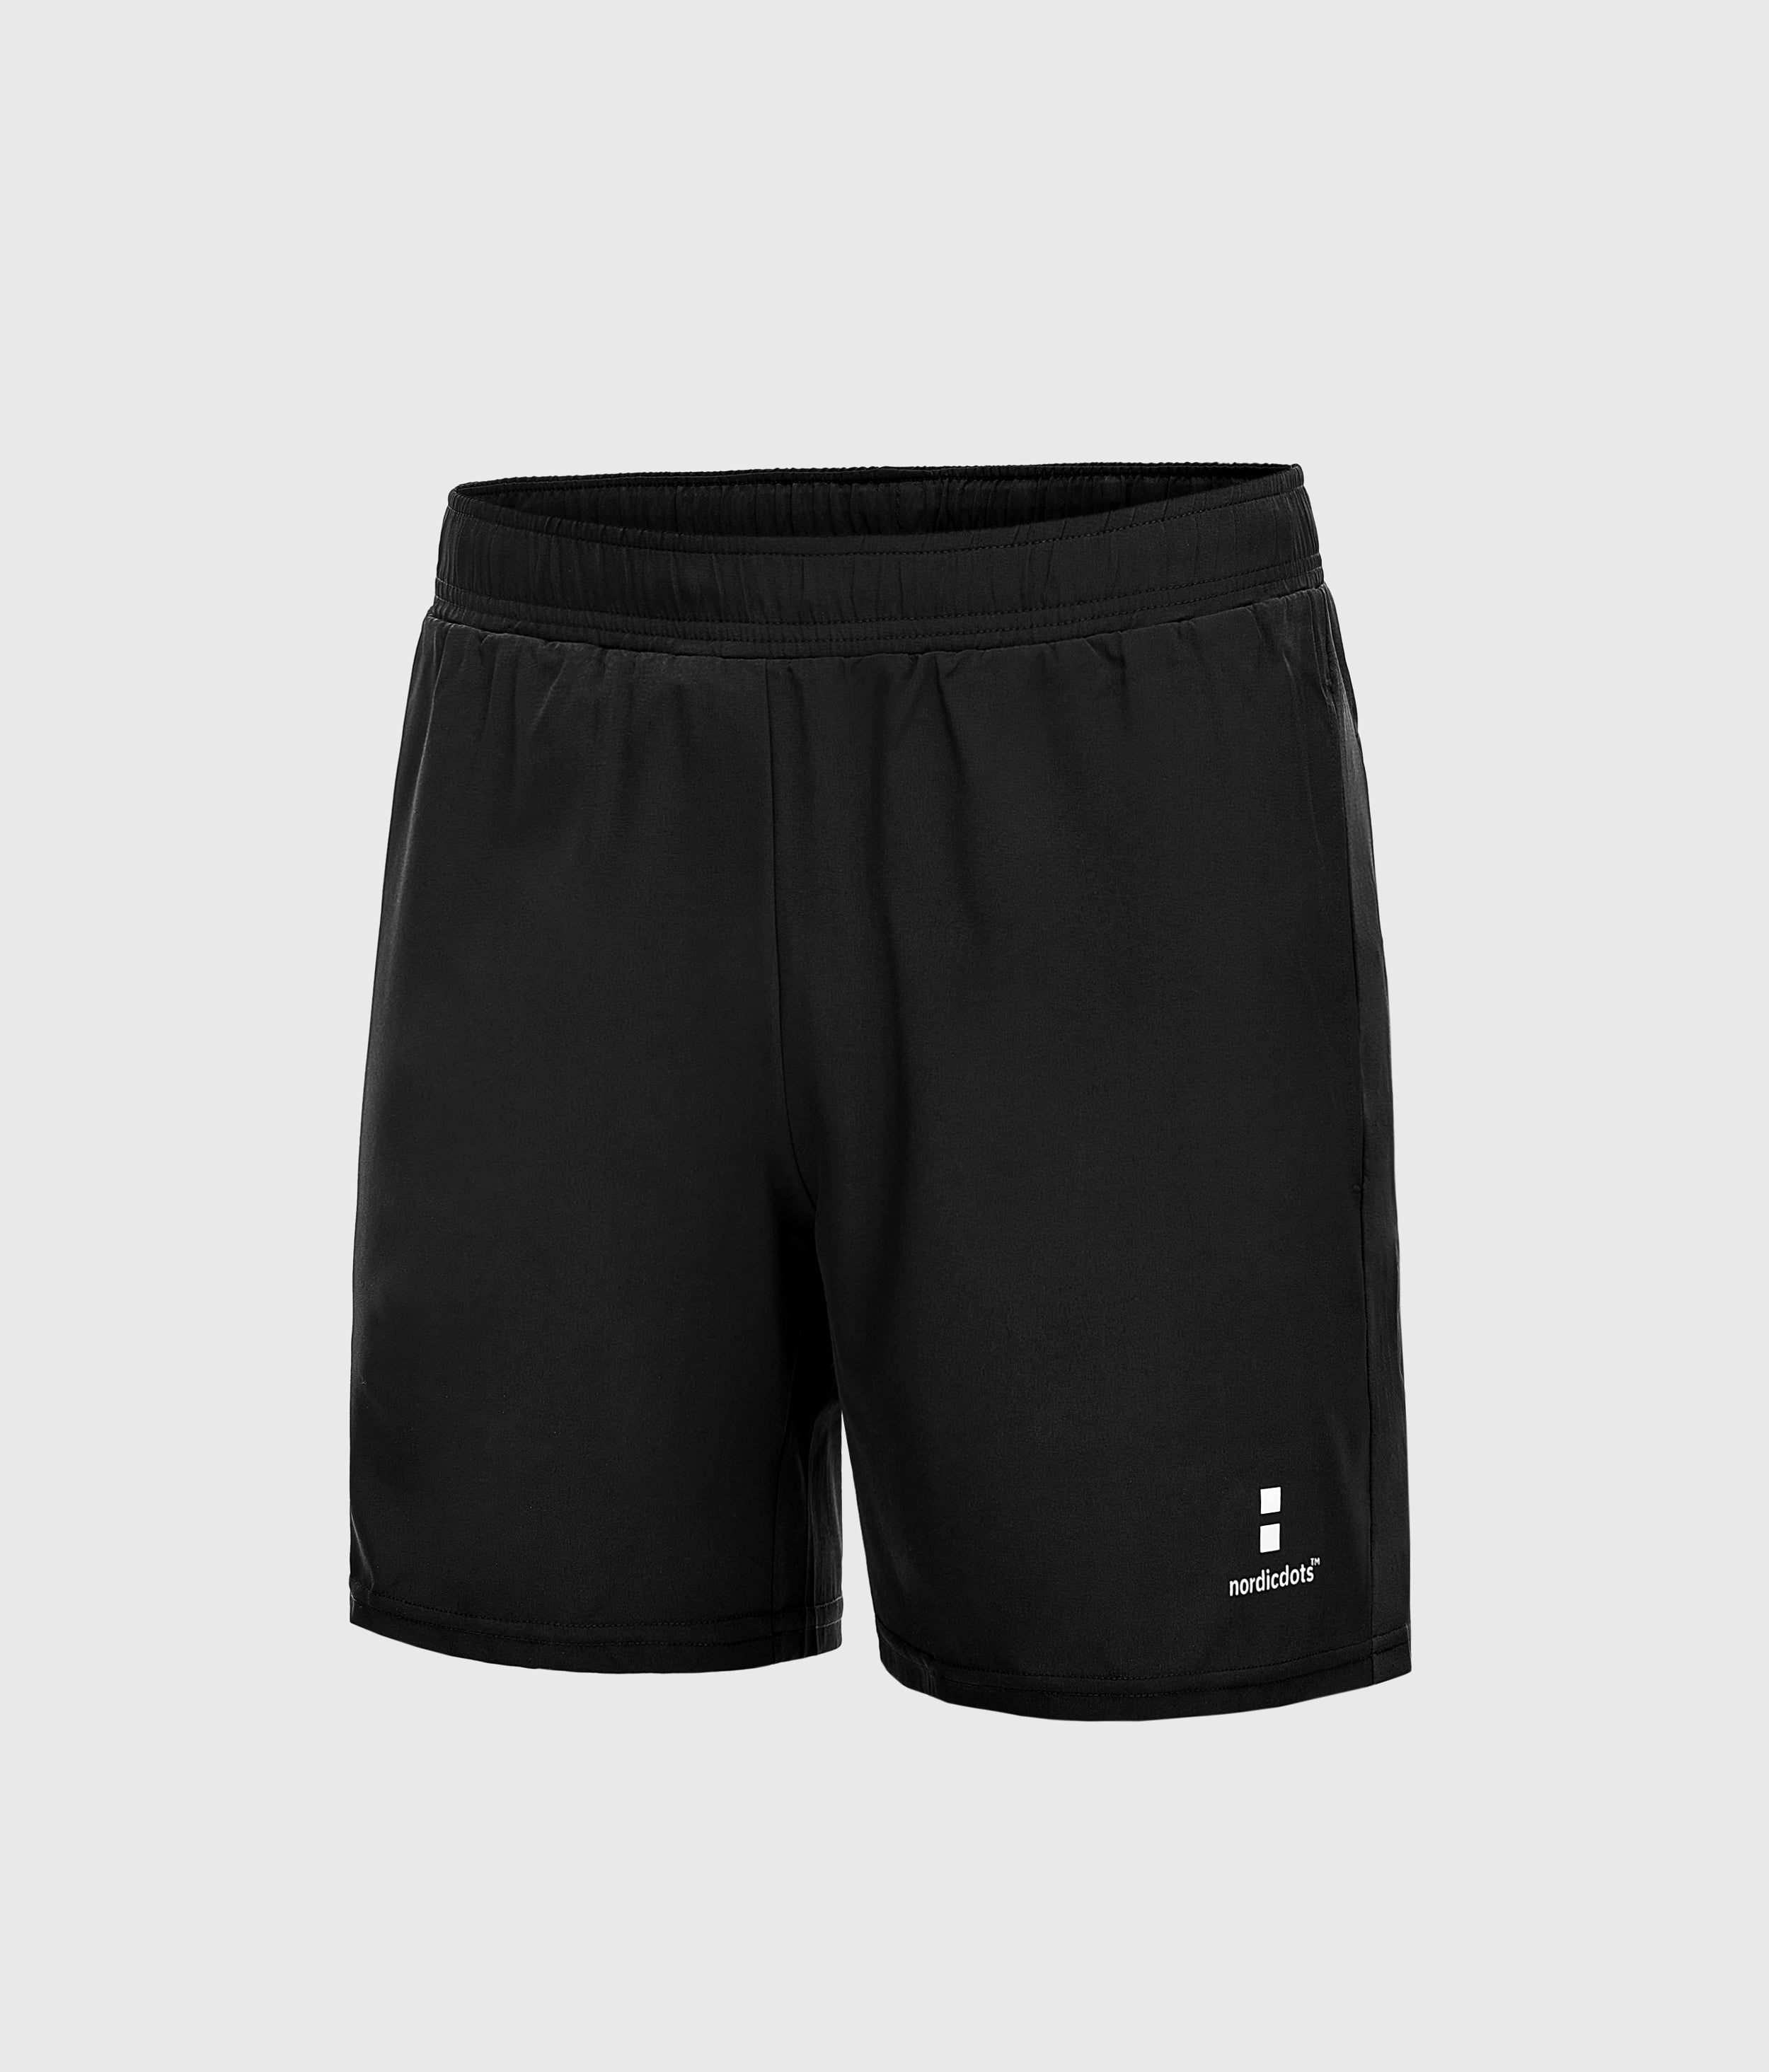 nordicdots tennis padel fitness shorts men's apparel nordicdots.co